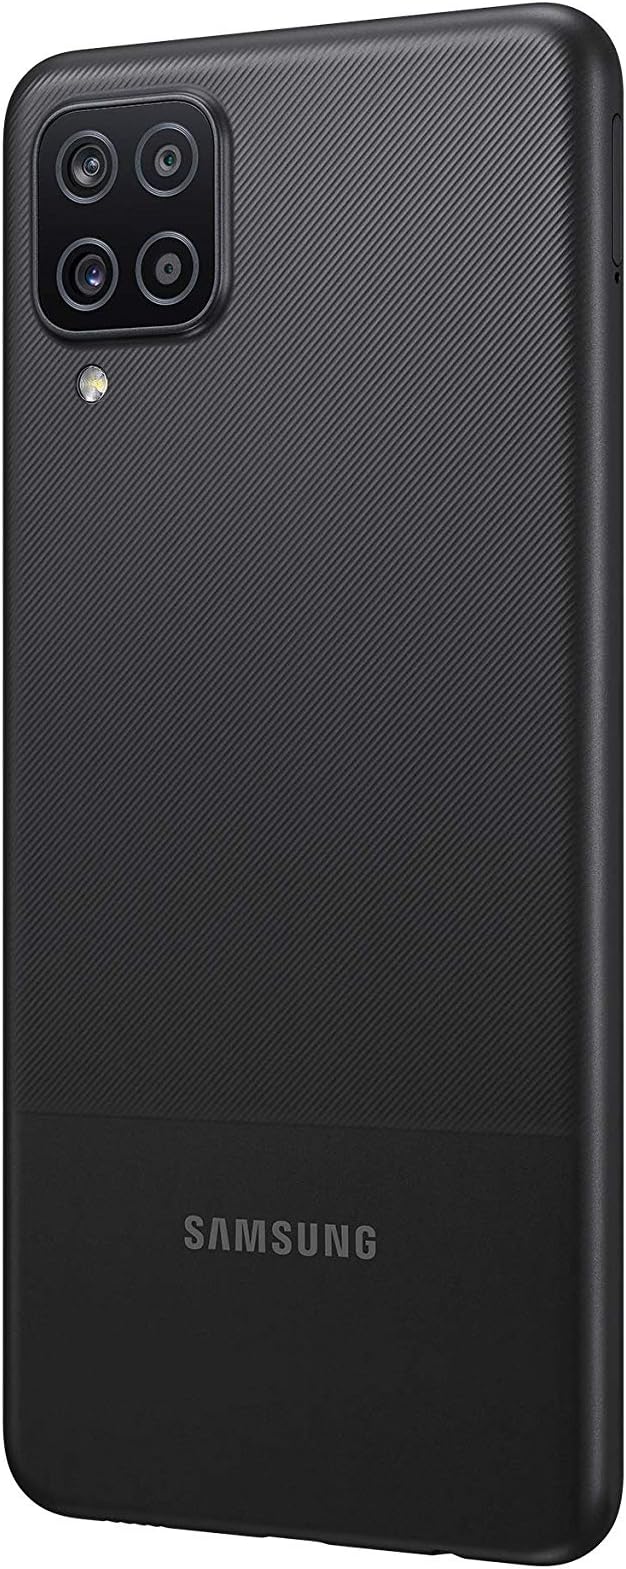 Samsung Galaxy A12 (Black) 64GB Dual Sim, Unlocked Ready To Go!!!